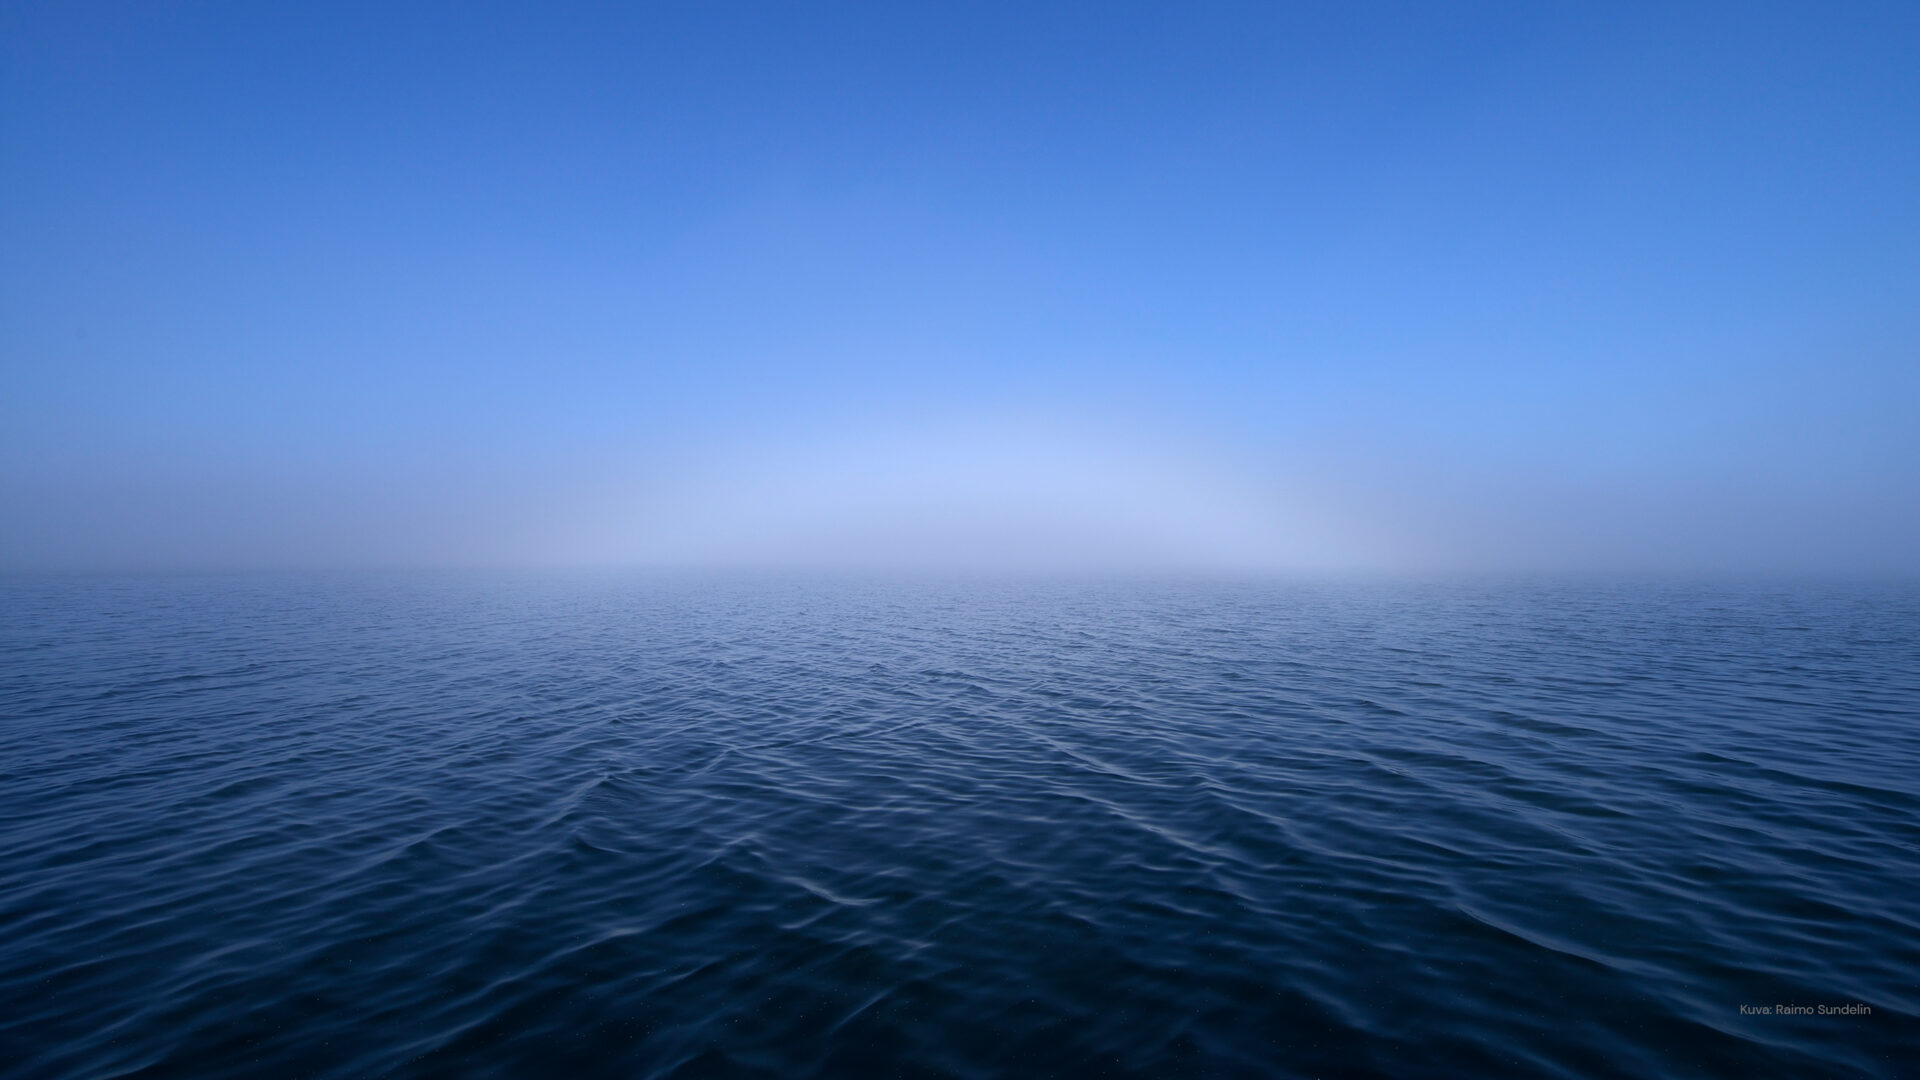 Aava meri kauniina päivänä sininen